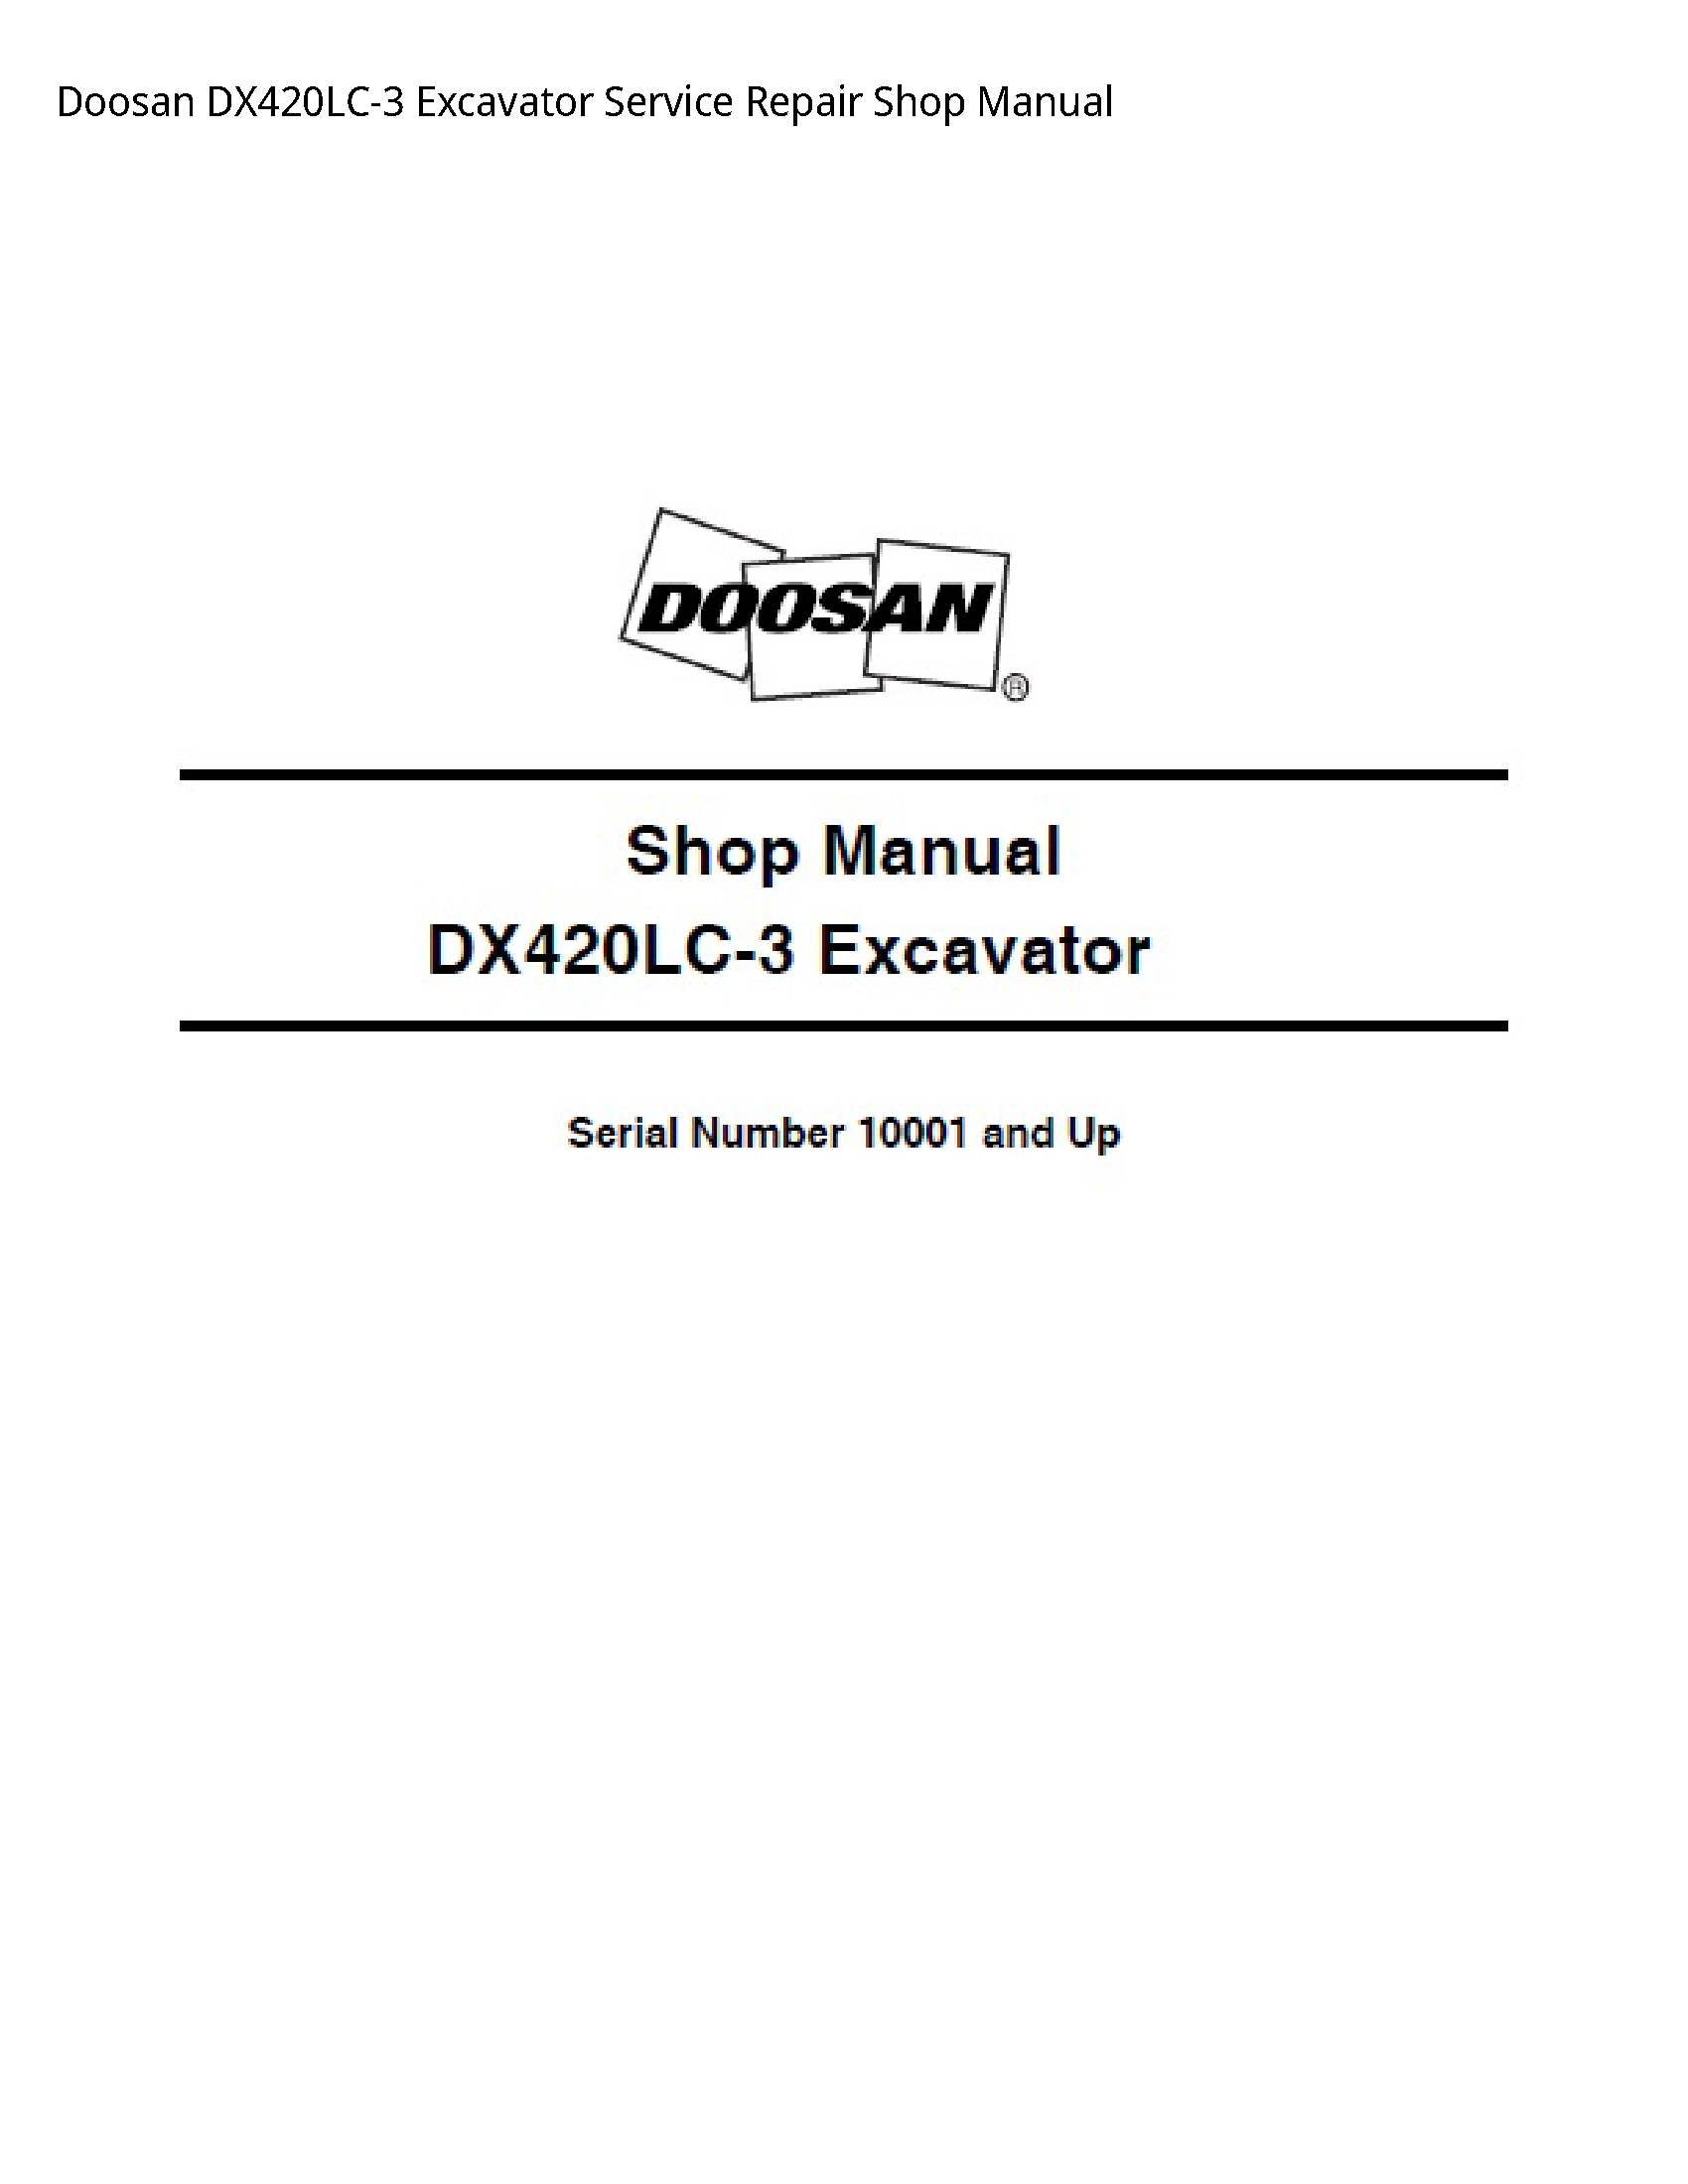 Doosan DX420LC-3 Excavator manual